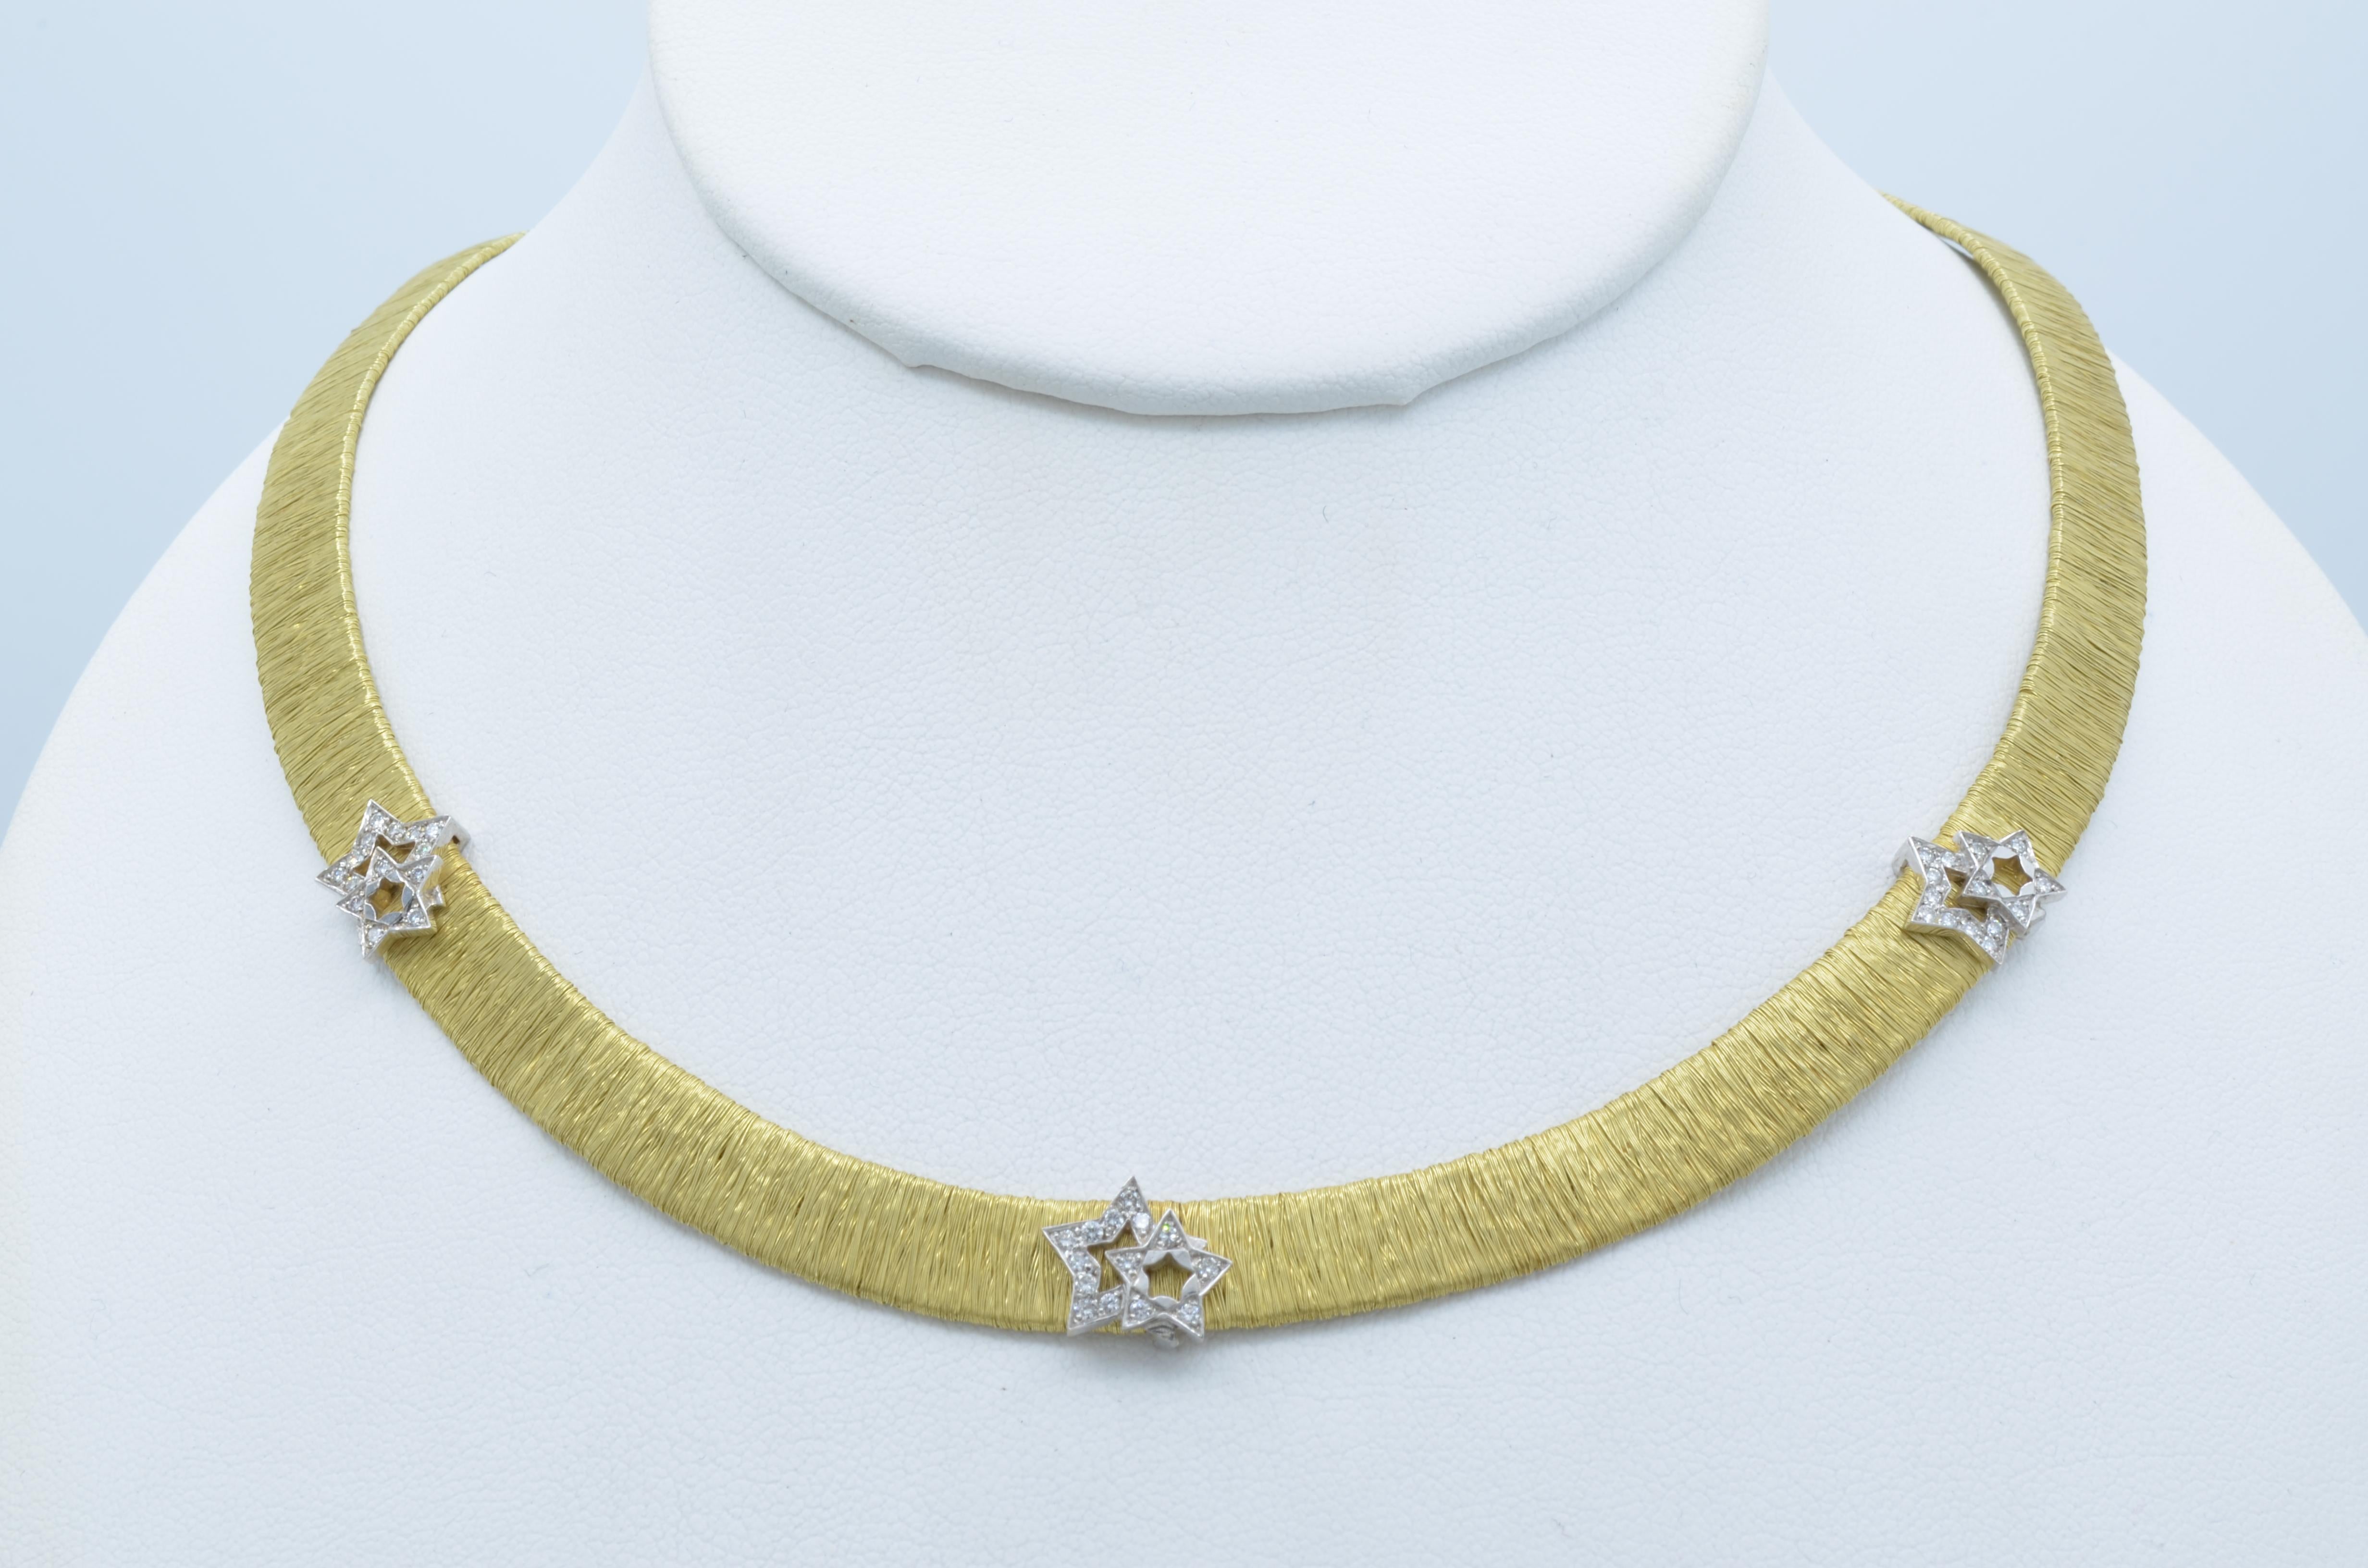 Es ist der Trend wieder, in der Art von einigen sehr berühmten italienischen Juwelier dieses eine zarte Halskette in 18k Gold Mesh mit einigen funkelnden Diamant-Doppel-Sterne. Wie Sie auf dem Bild mit schwarzem Hintergrund sehen können, umarmt die